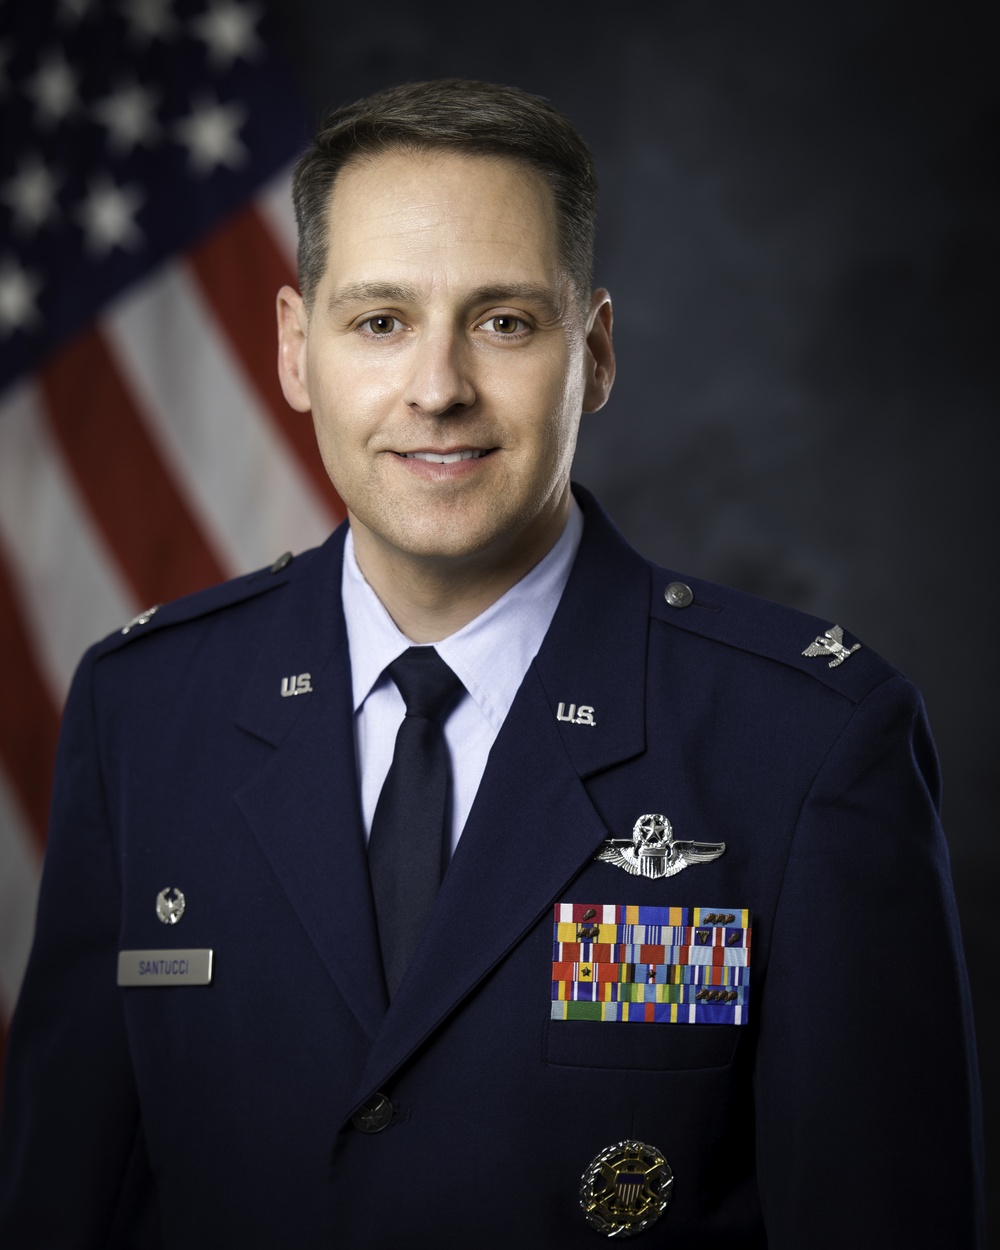 Official Portrait of Col. Joseph C. Santucci, US Air Force